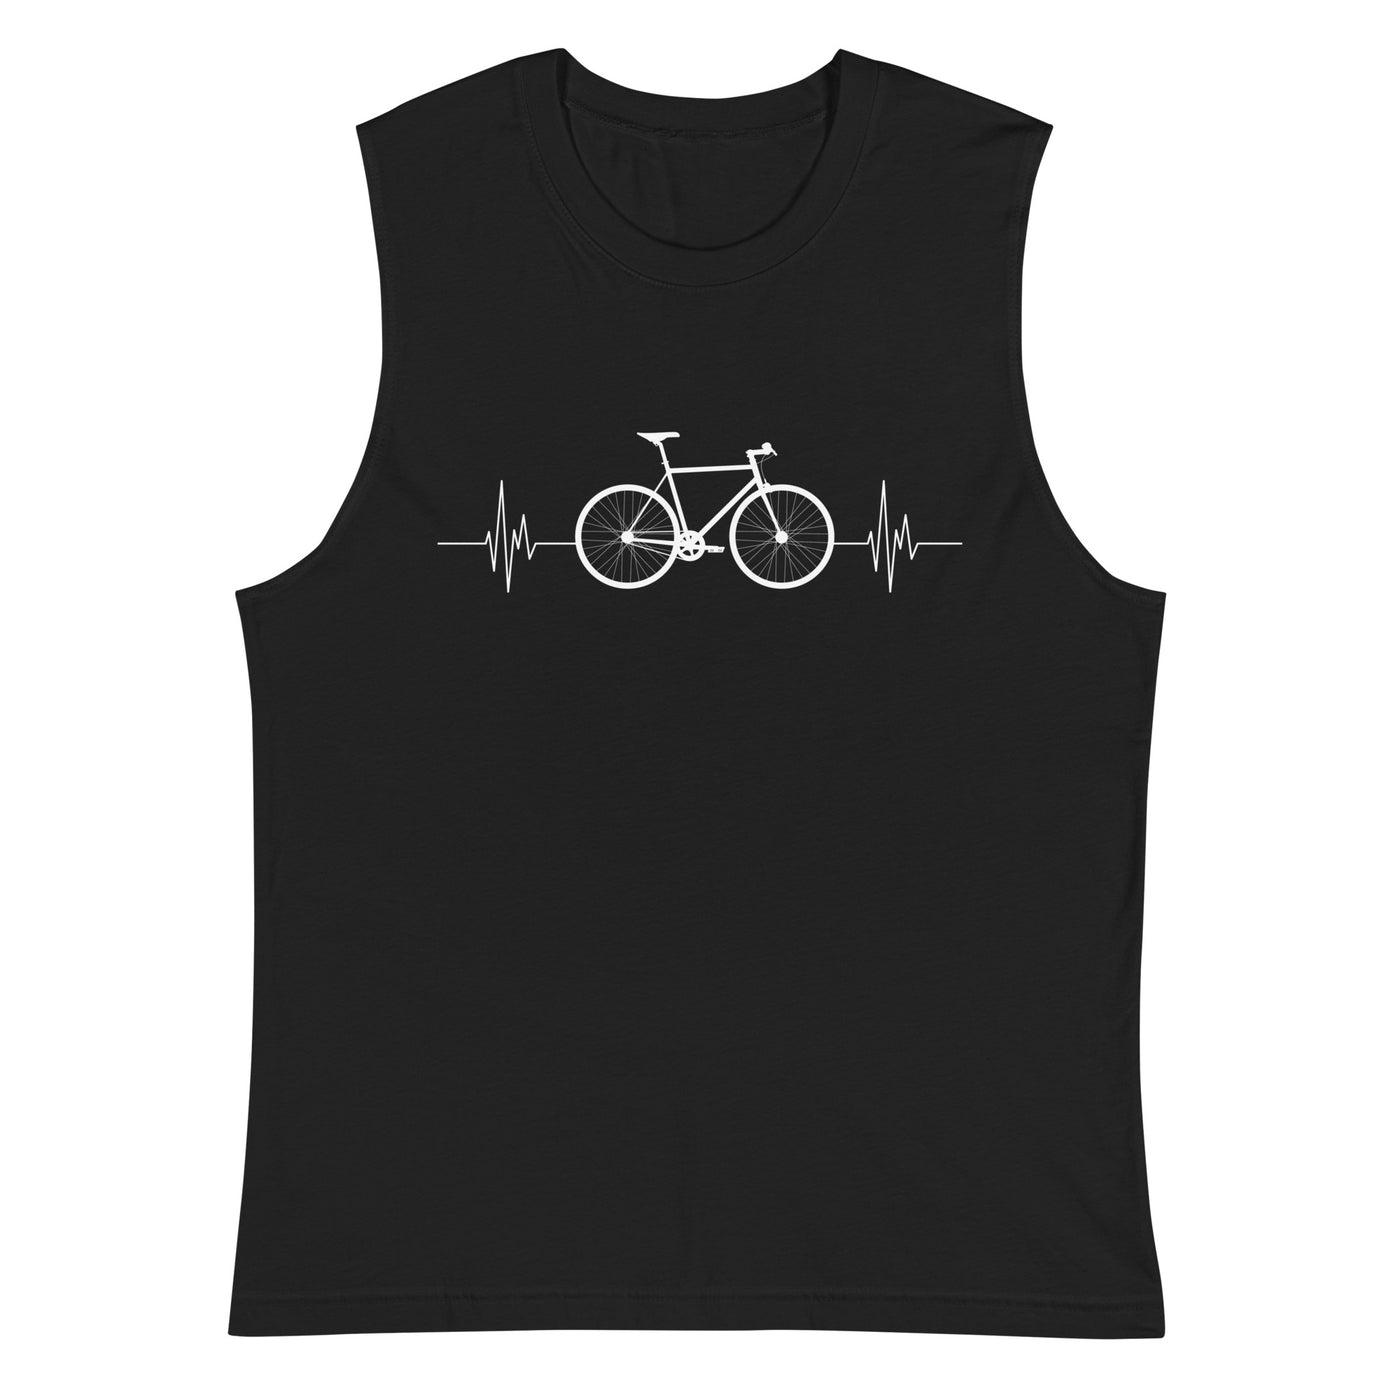 Fahrrad Herzschlag - Muskelshirt (Unisex) fahrrad mountainbike Schwarz